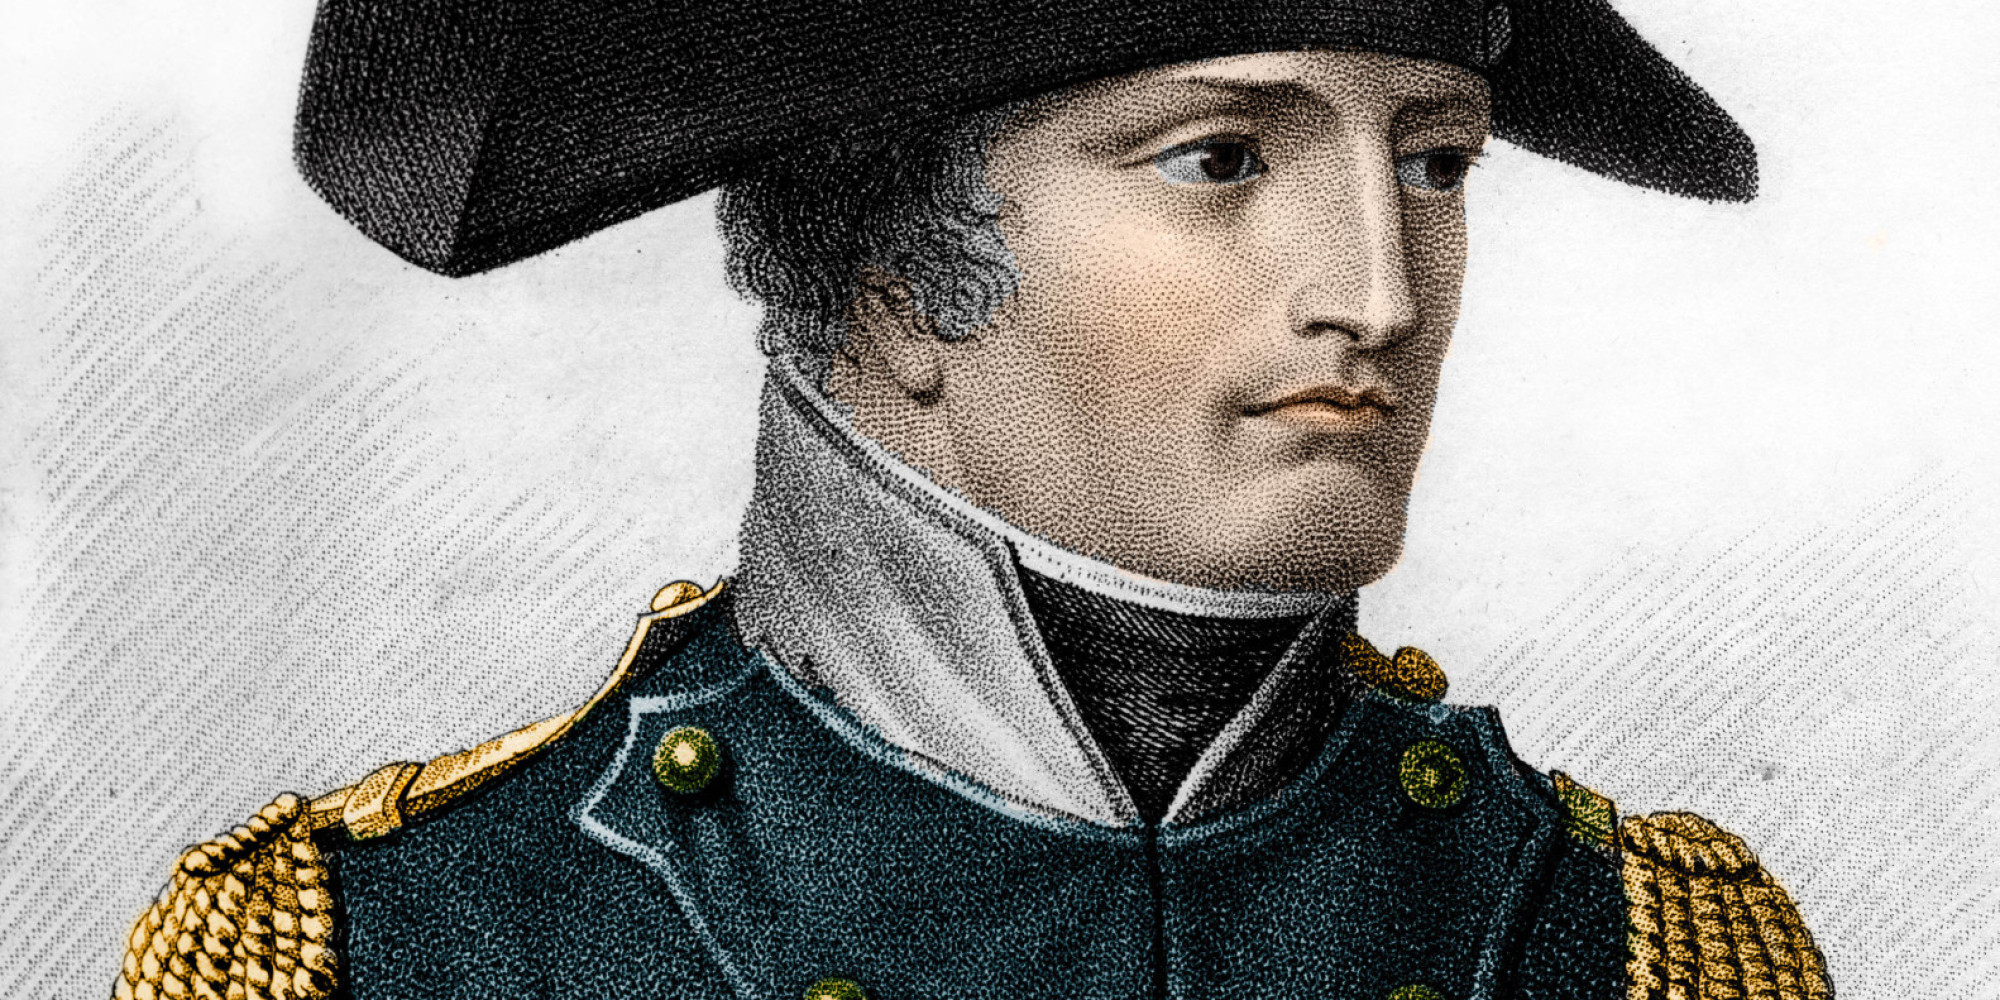 5. Napoleon era foarte scund.